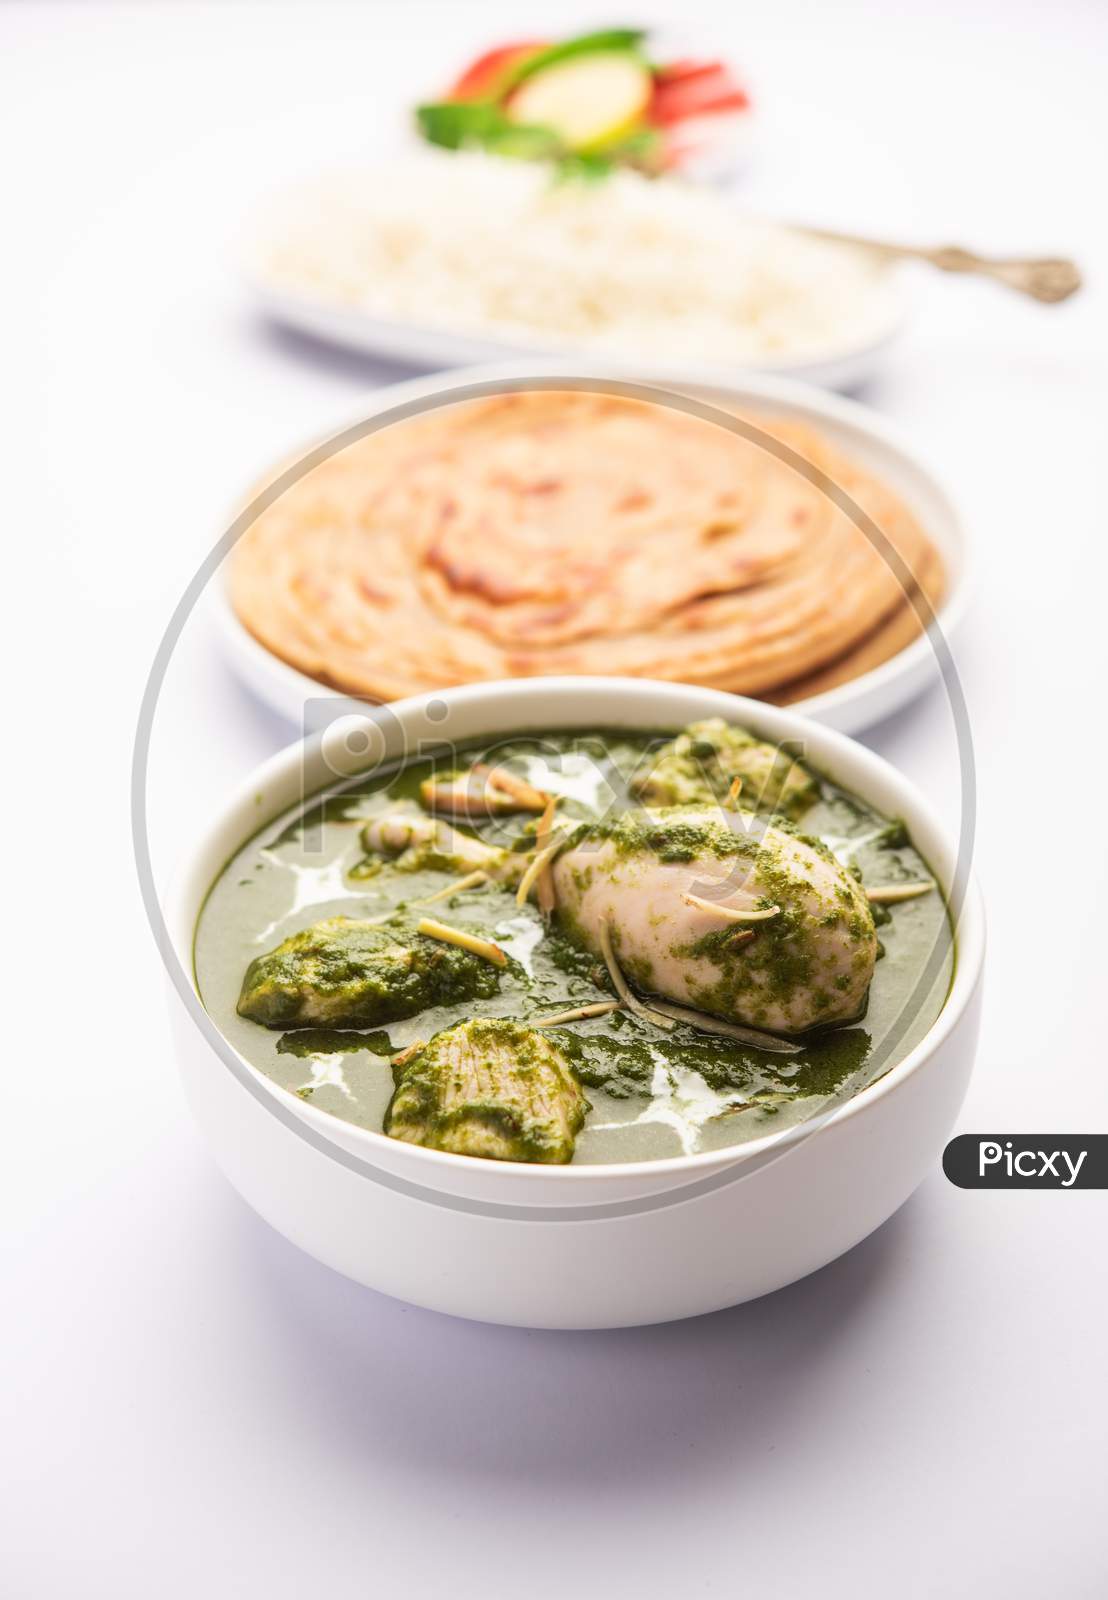 Green Palak Chicken Curry Or Murgh Hariyali Tikka Masala Or Spinach Murg Saagwala Served With Rice And Laccha Paratha